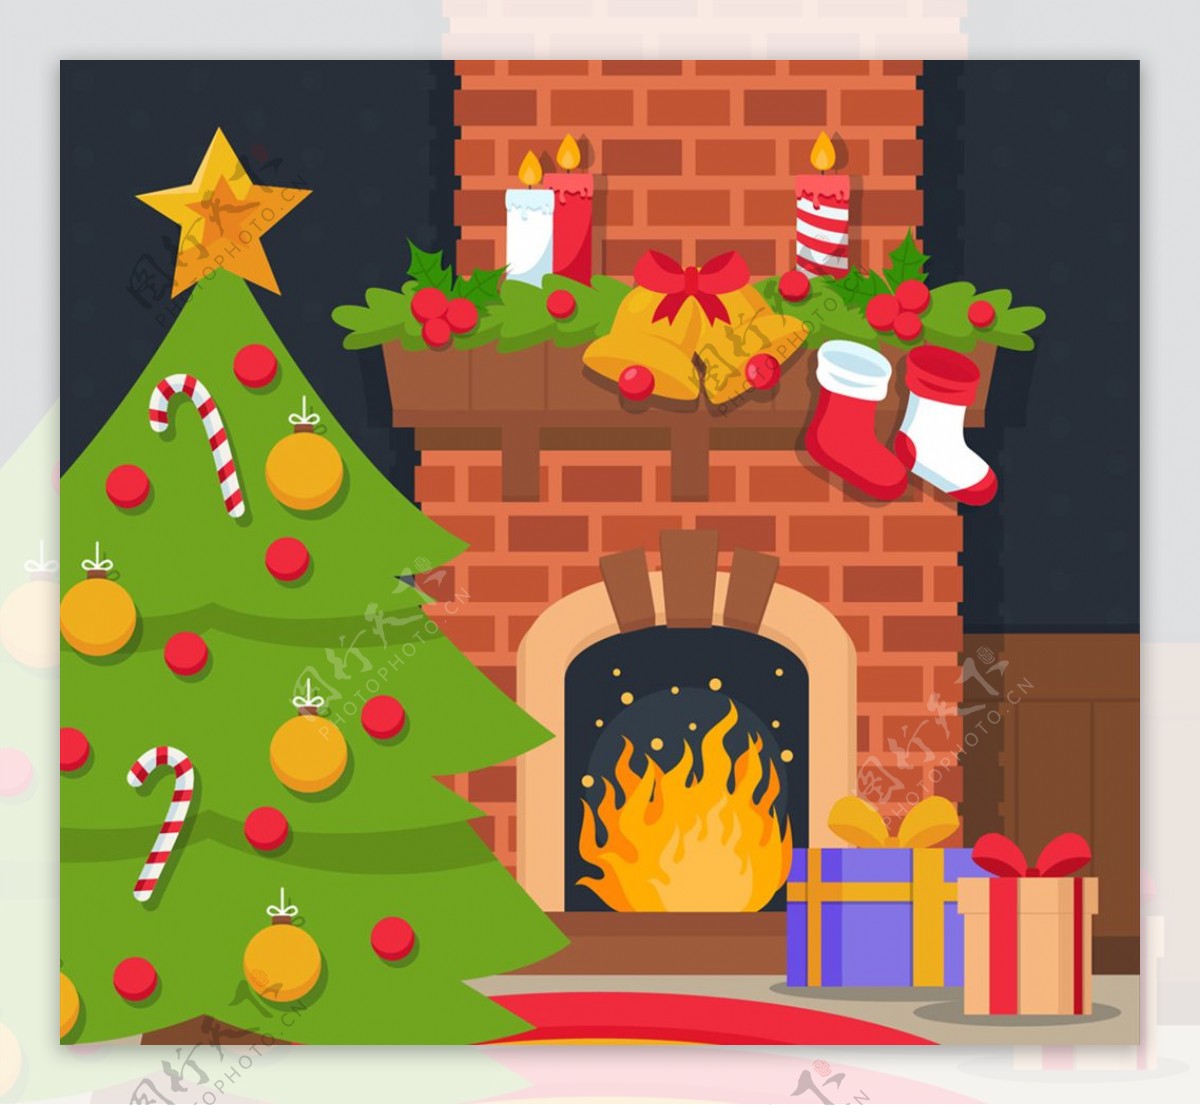 圣诞夜壁炉和圣诞树